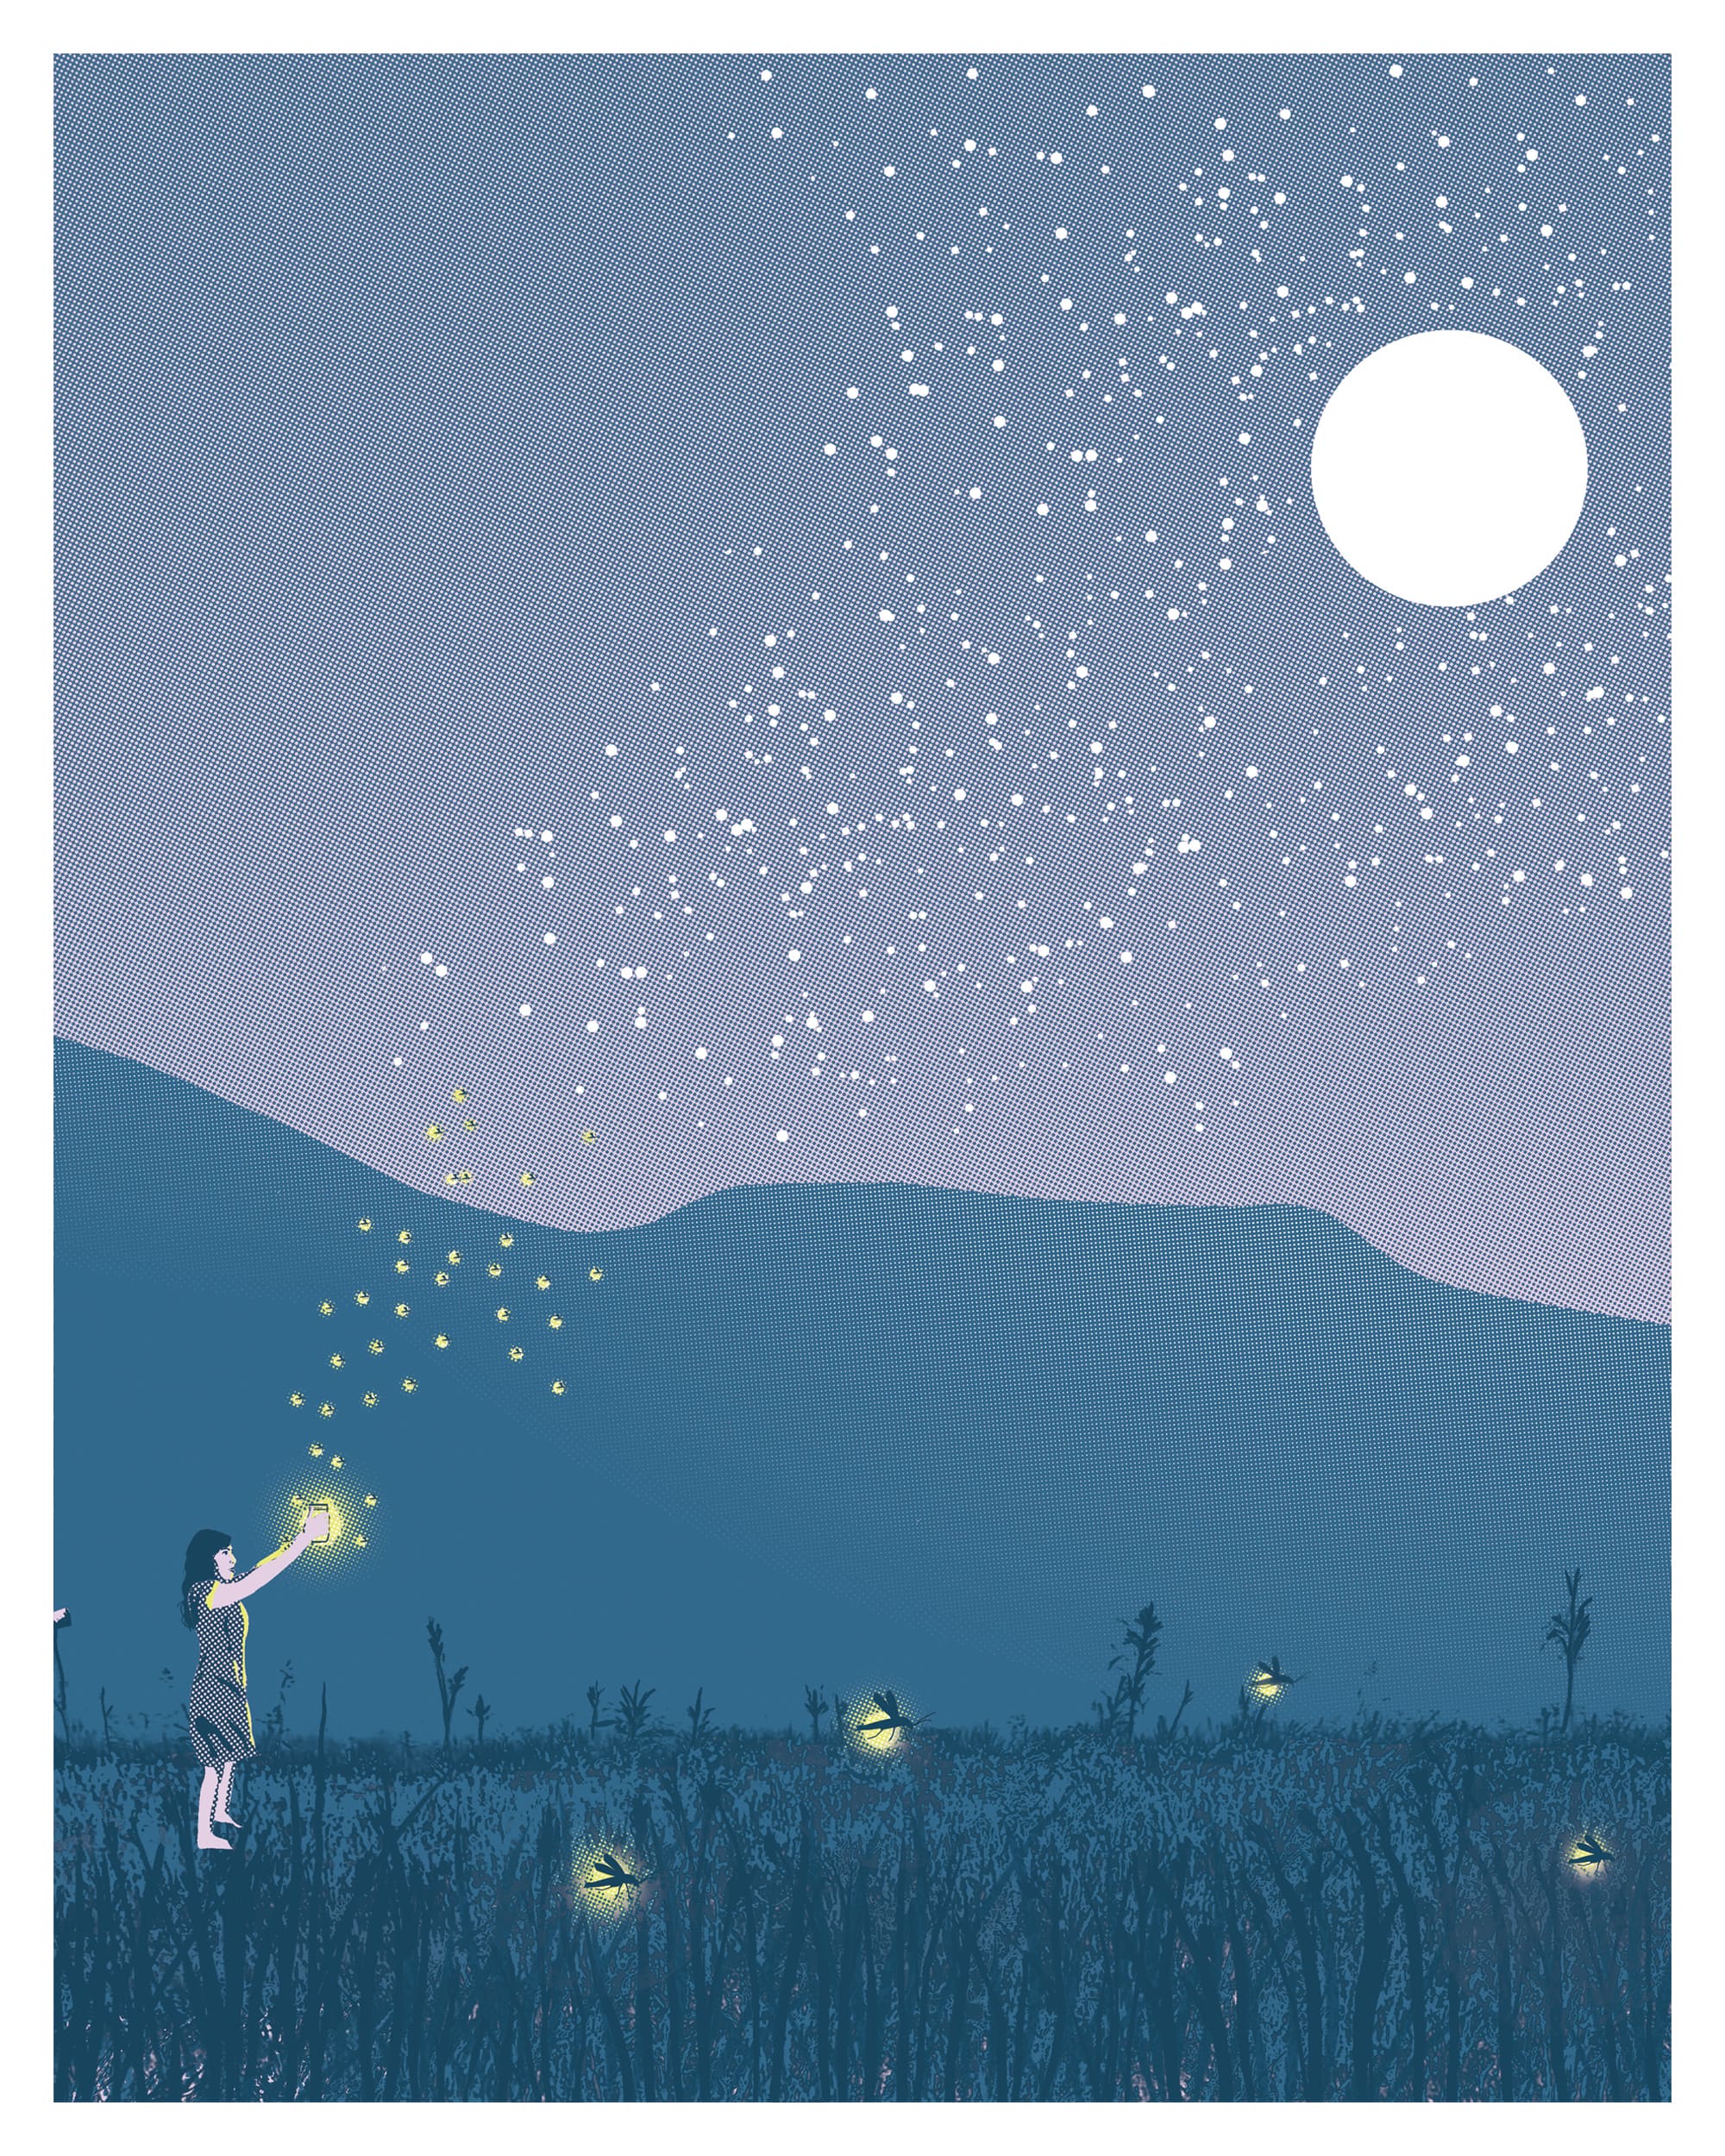 Fireflies Posters Online - Shop Unique Metal Prints, Pictures